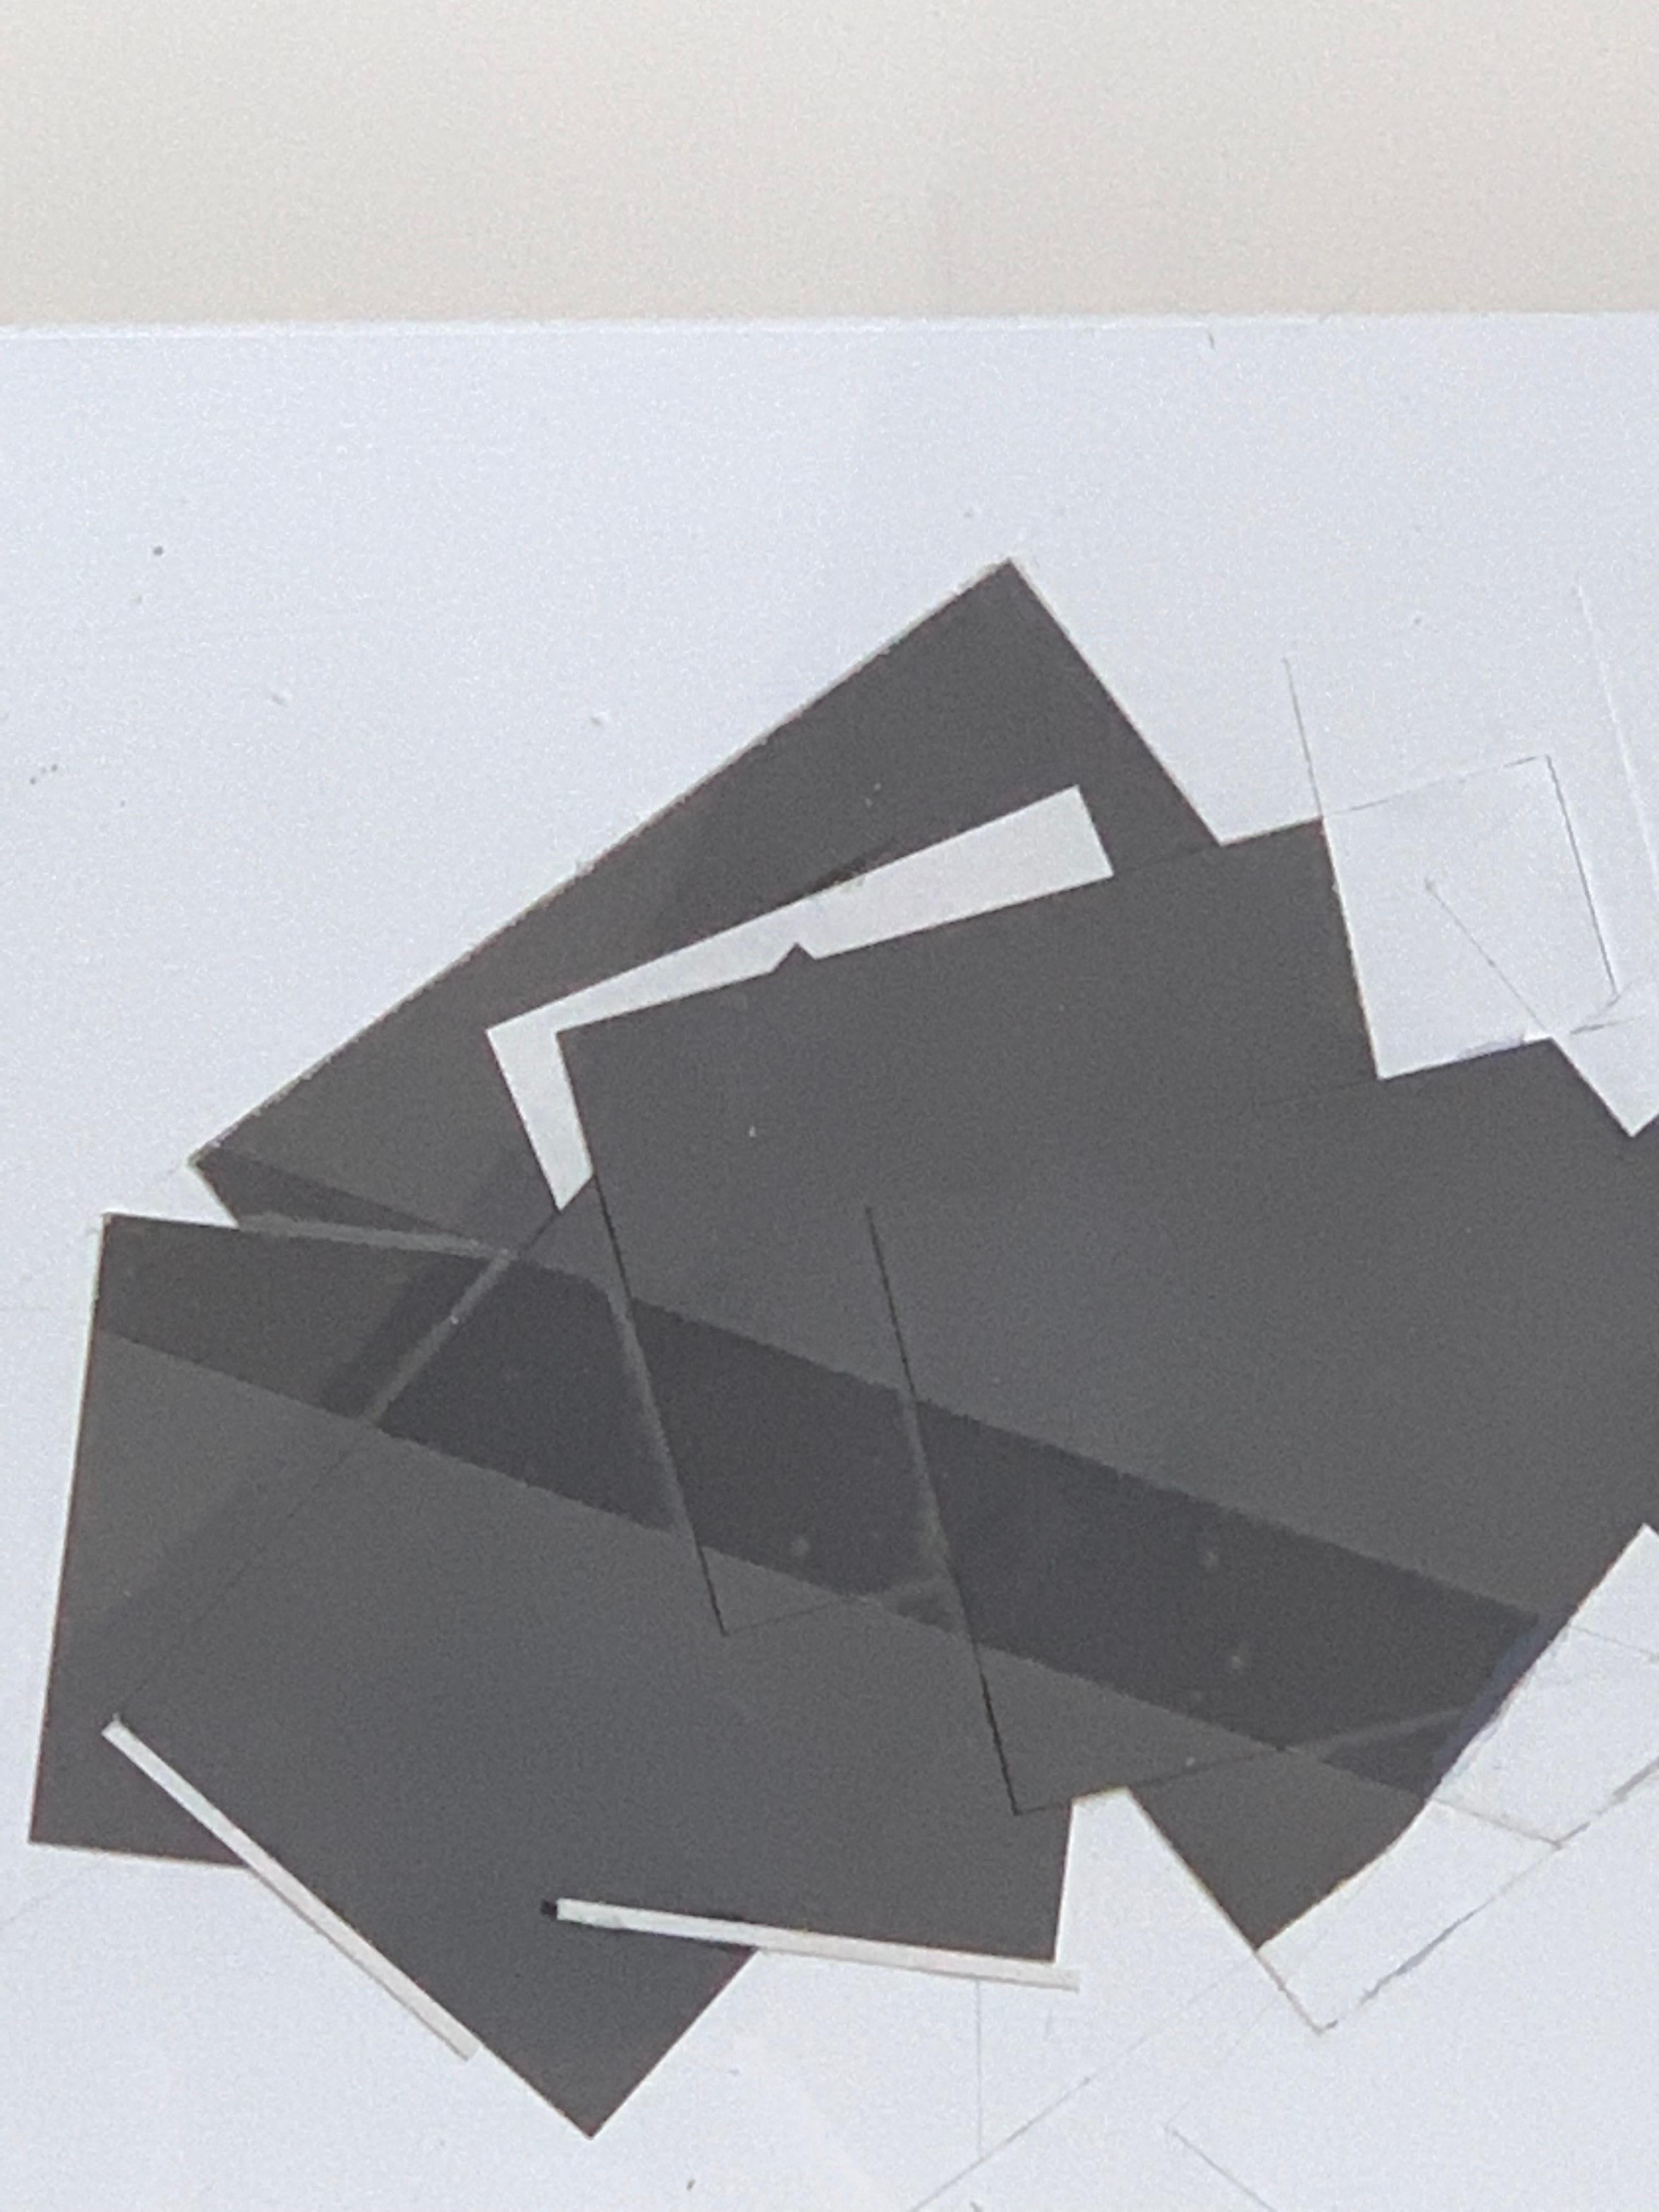 Angepasste Silhouette, 1975, Collage, Mischtechnik auf Papier (Geometrische Abstraktion), Mixed Media Art, von Joel Bass